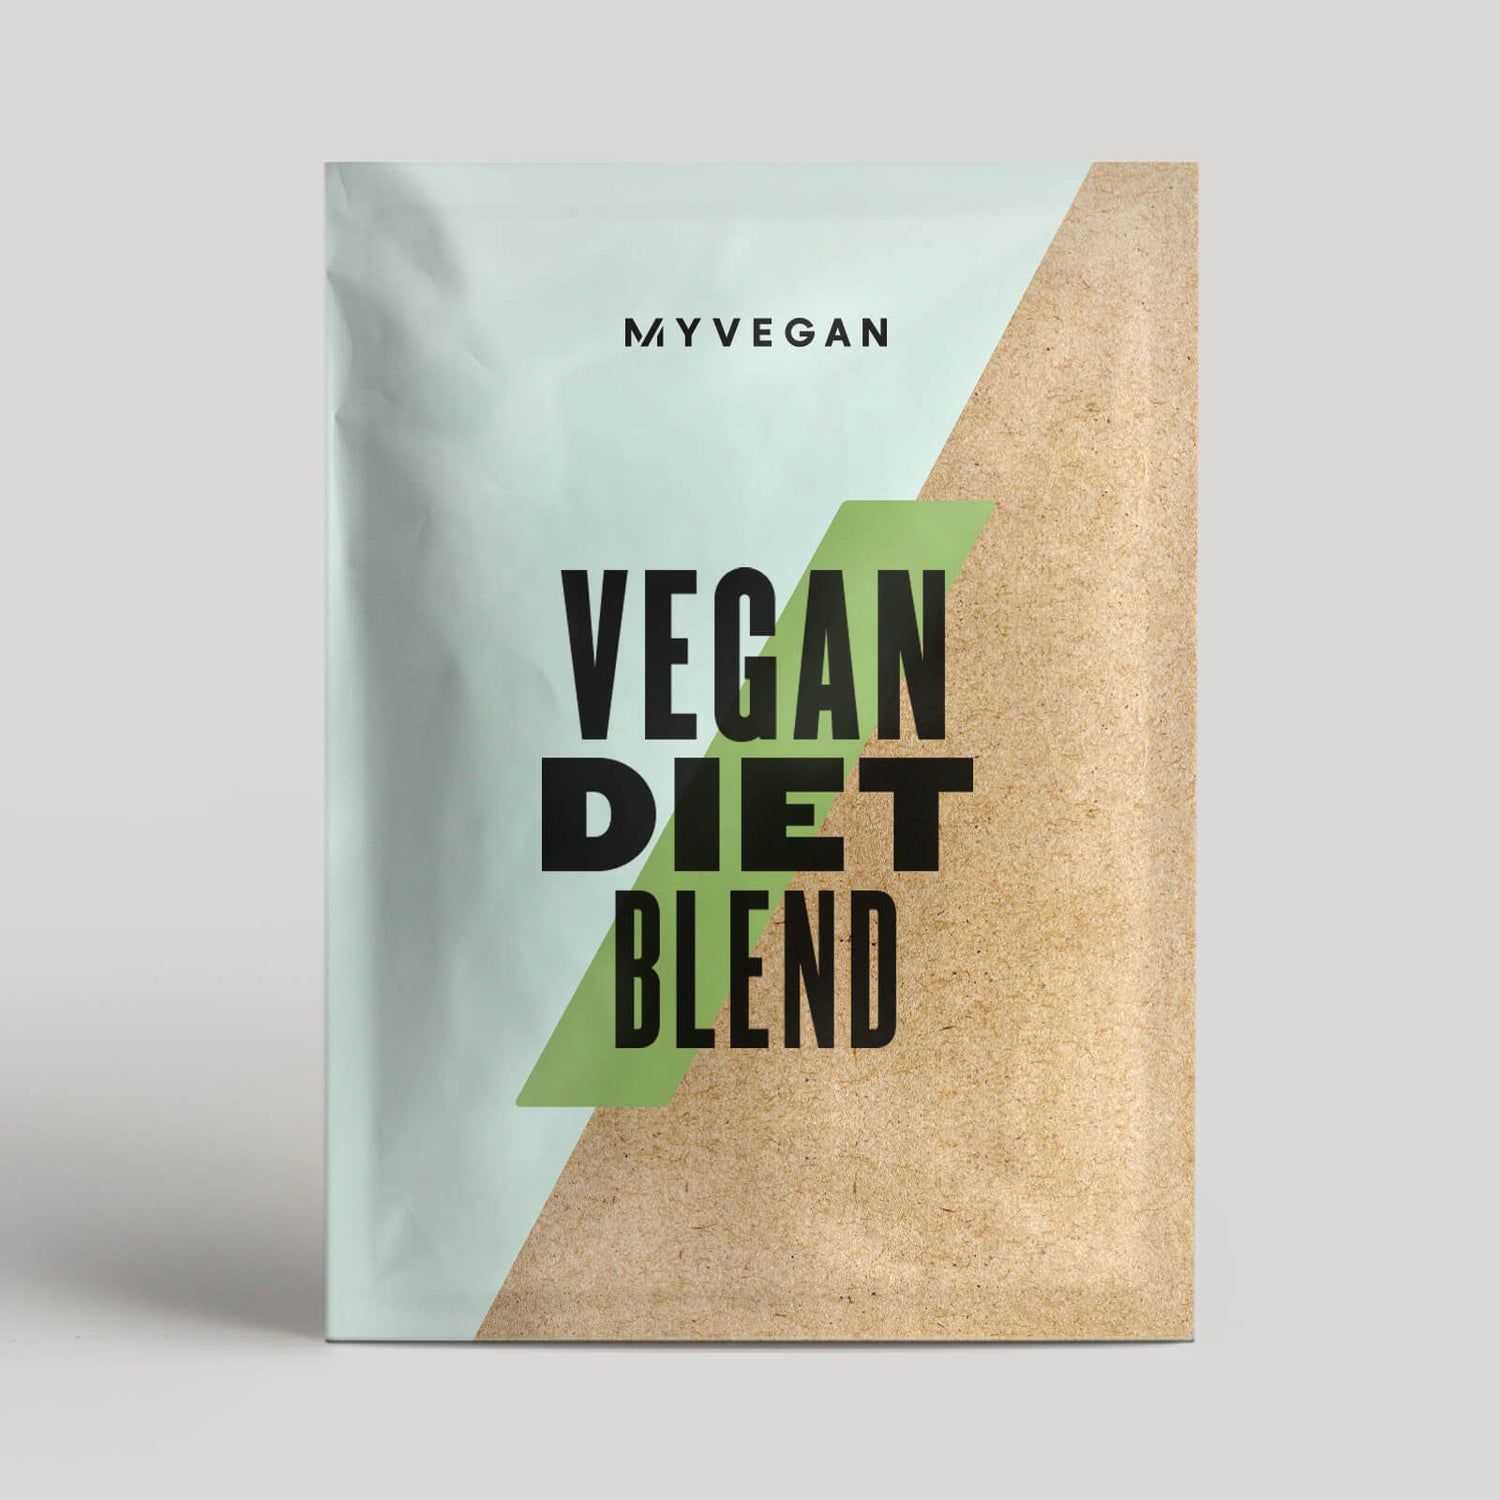 Myvegan Vegan Diet Blend (Sample) - 17g - Cafe y Caramelo